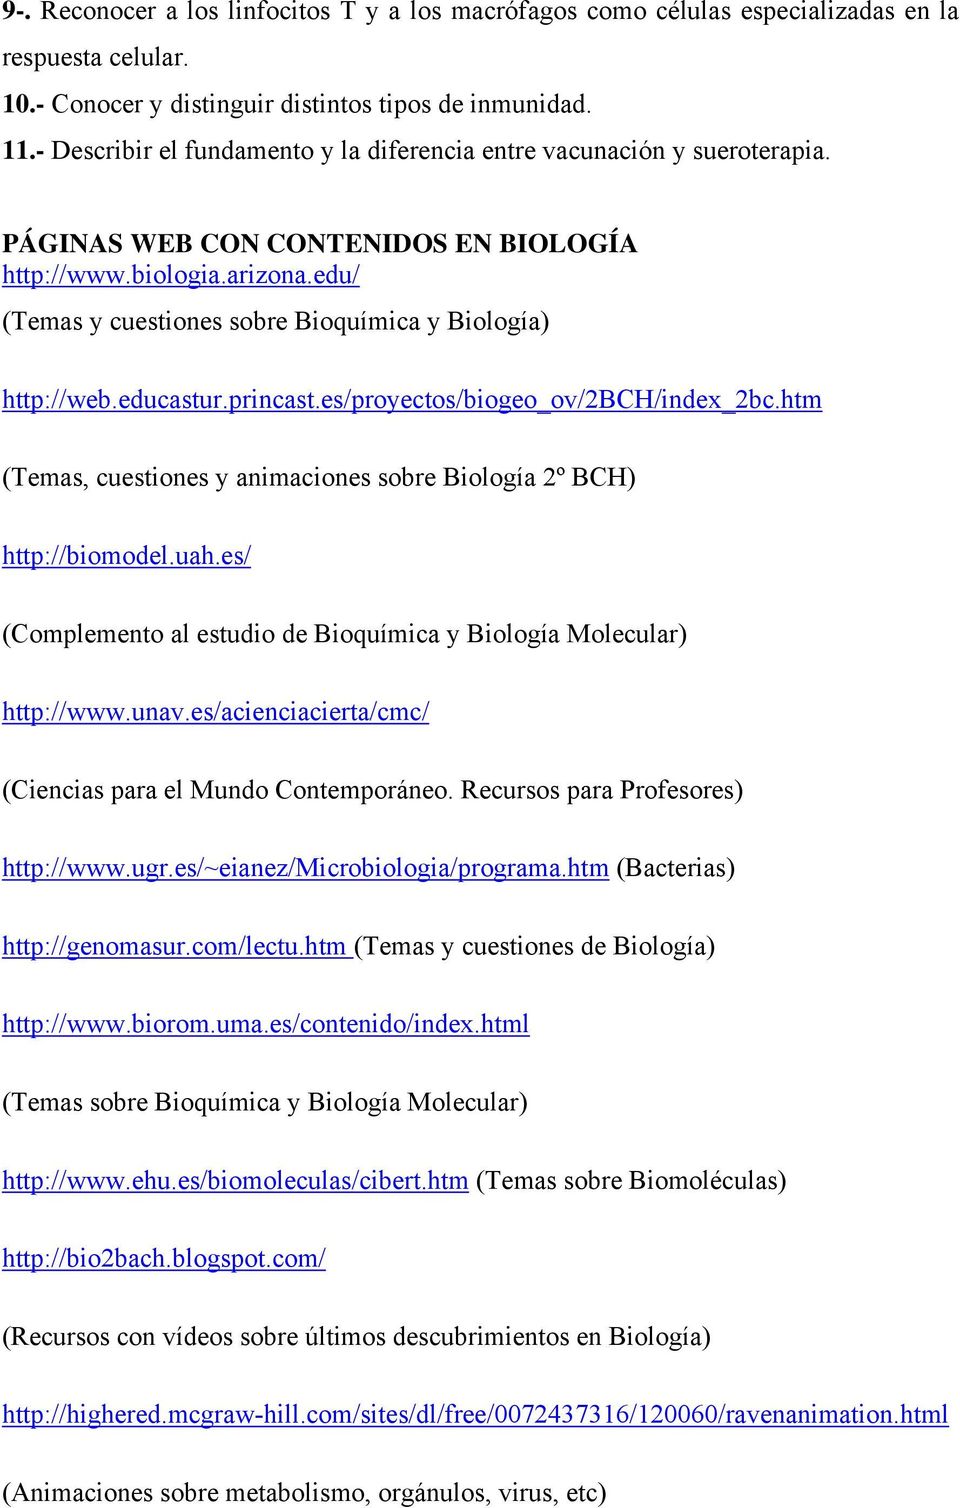 edu/ (Temas y cuestiones sobre Bioquímica y Biología) http://web.educastur.princast.es/proyectos/biogeo_ov/2bch/index_2bc.htm (Temas, cuestiones y animaciones sobre Biología 2º BCH) http://biomodel.